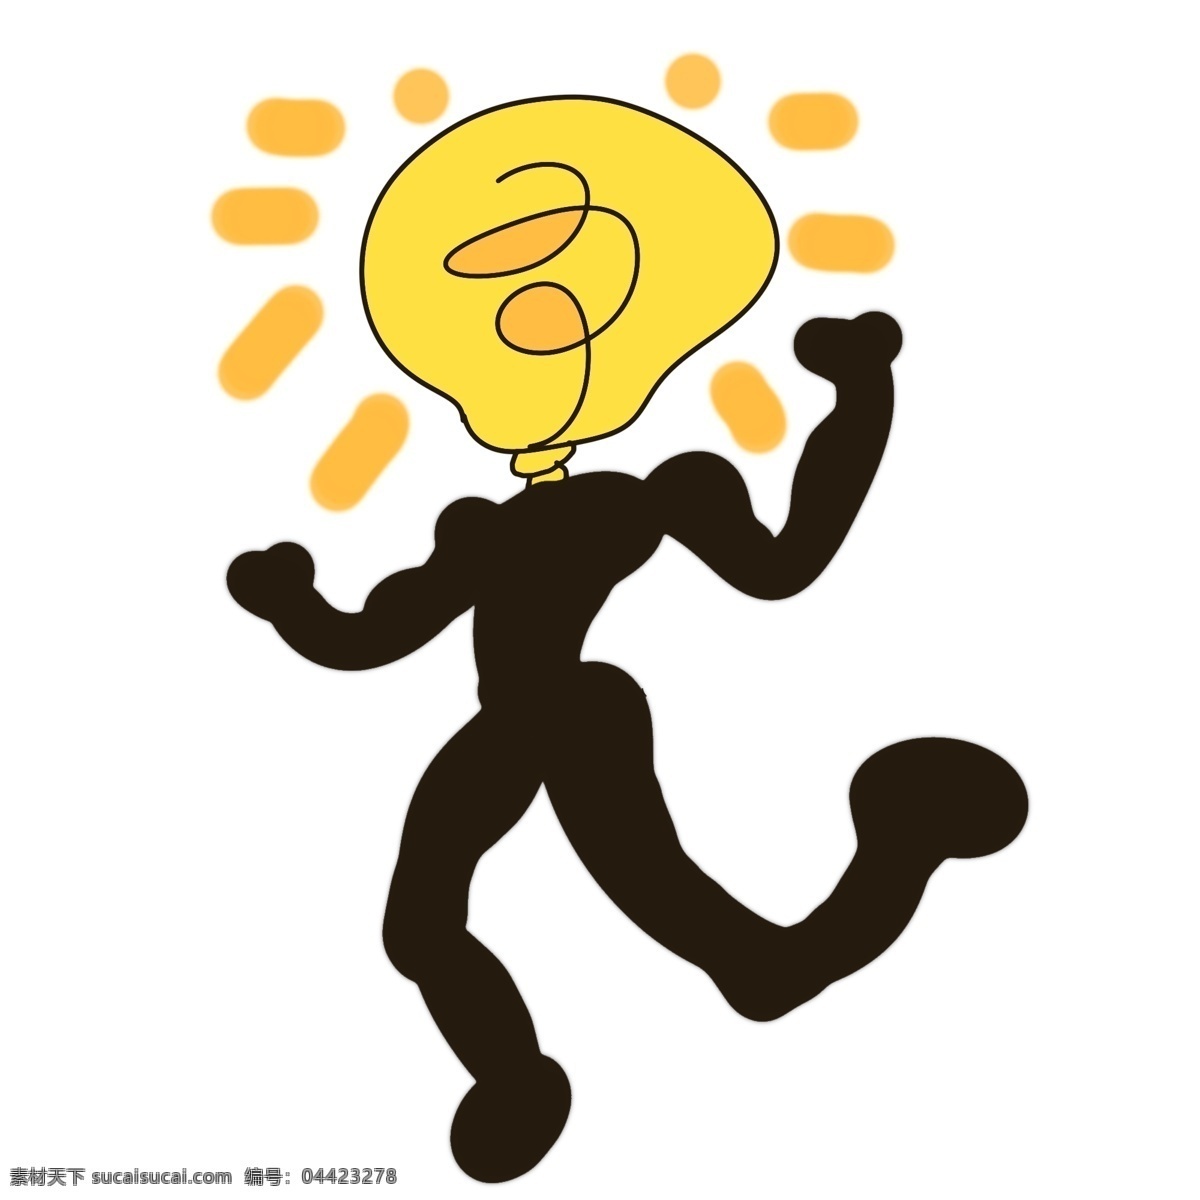 创意 黄色 灯泡 插画 黑色的人体 黄色灯泡 灯具 发光的灯具 黄色的光芒 黑色灯丝 精美